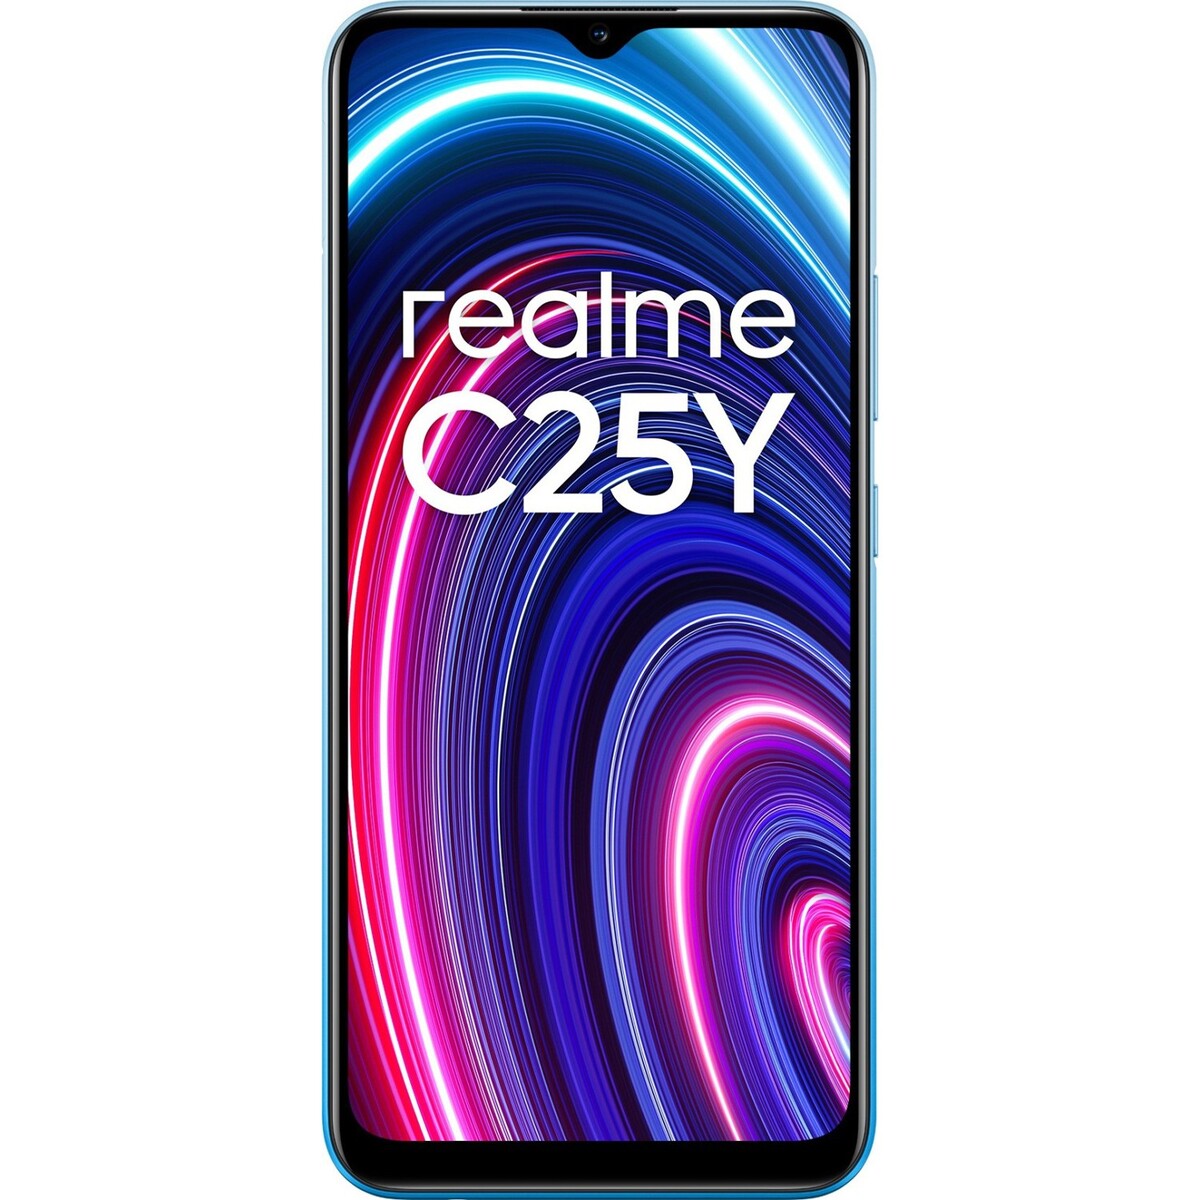 Realme C25Y 4GB/64GB Glacier Blue